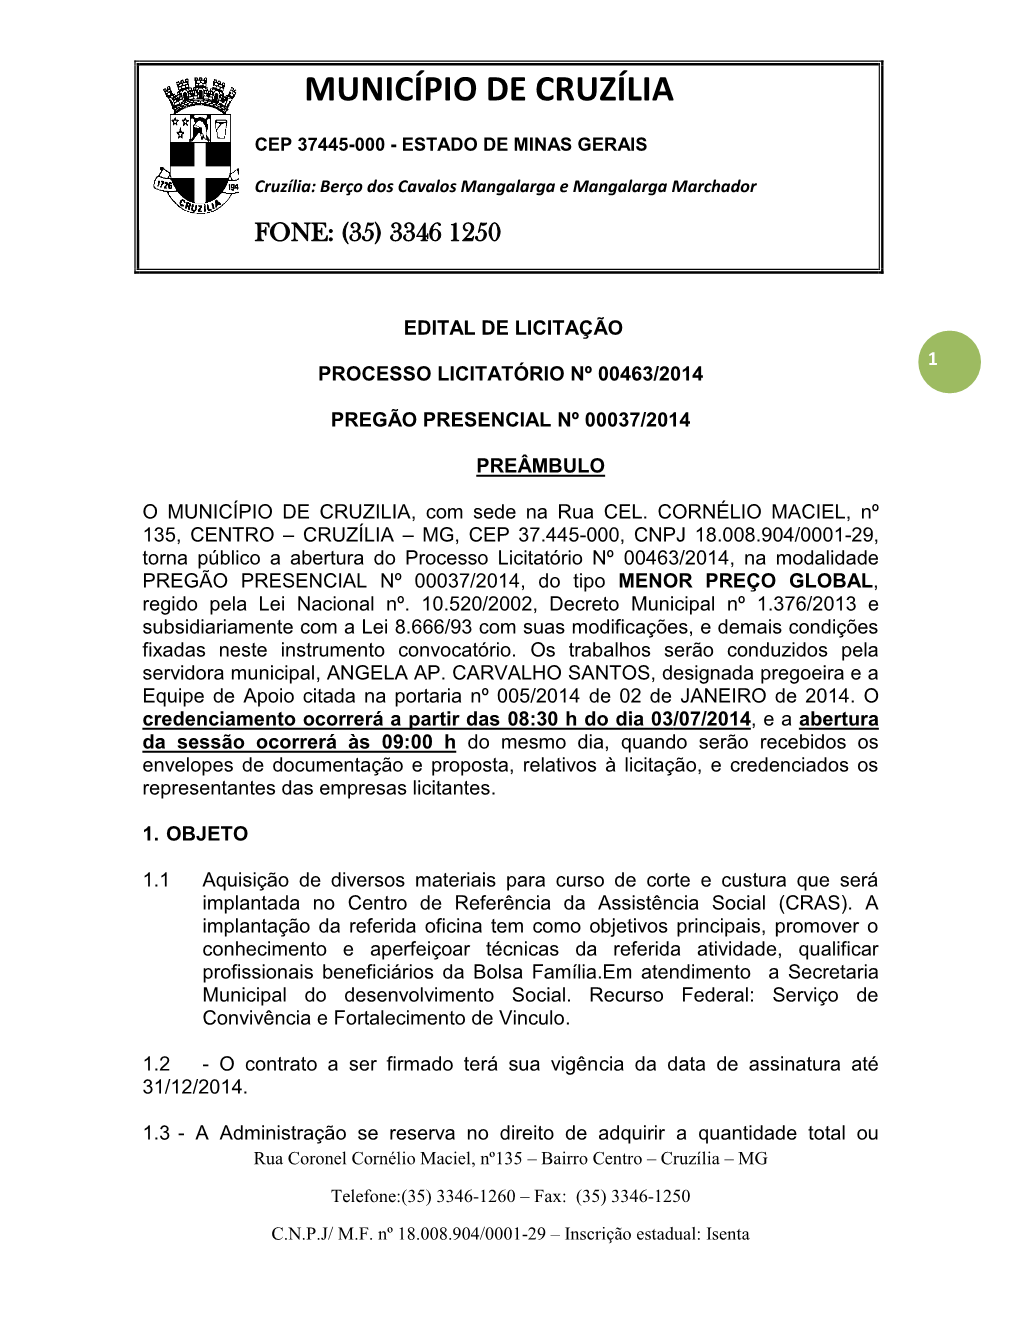 Edital De Licitação 1 Processo Licitatório Nº 00463/2014